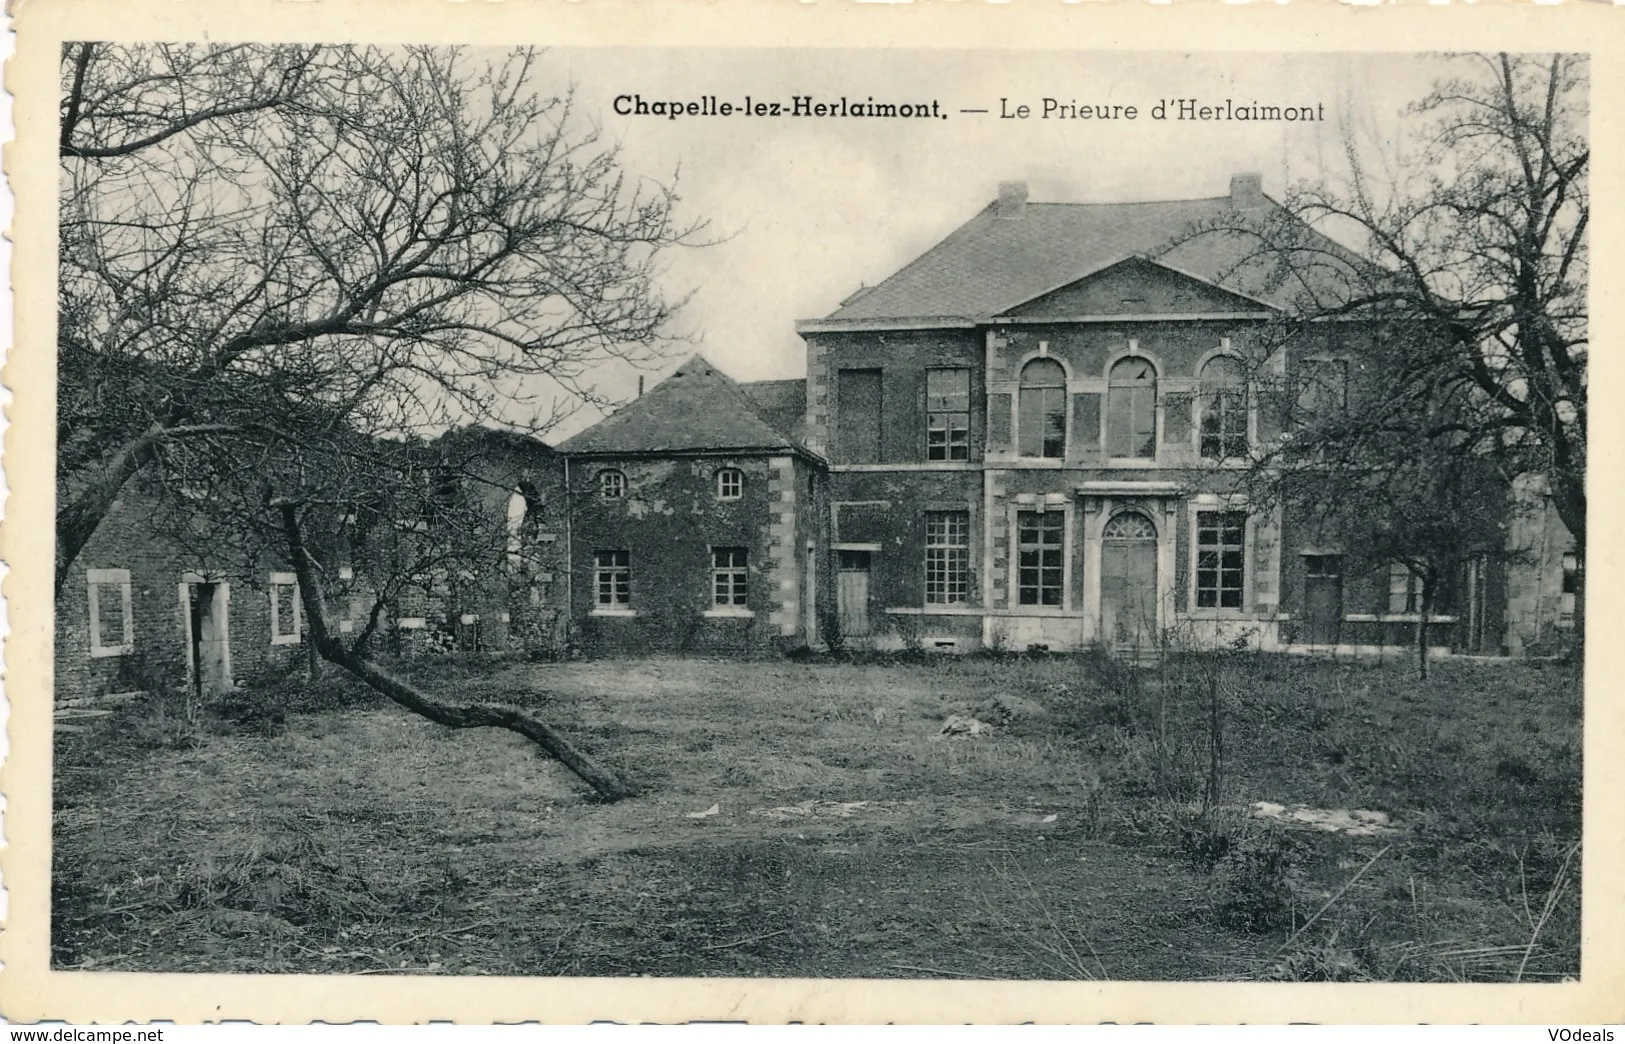 Photo showing: Prieuré chapelle lez herlaimont